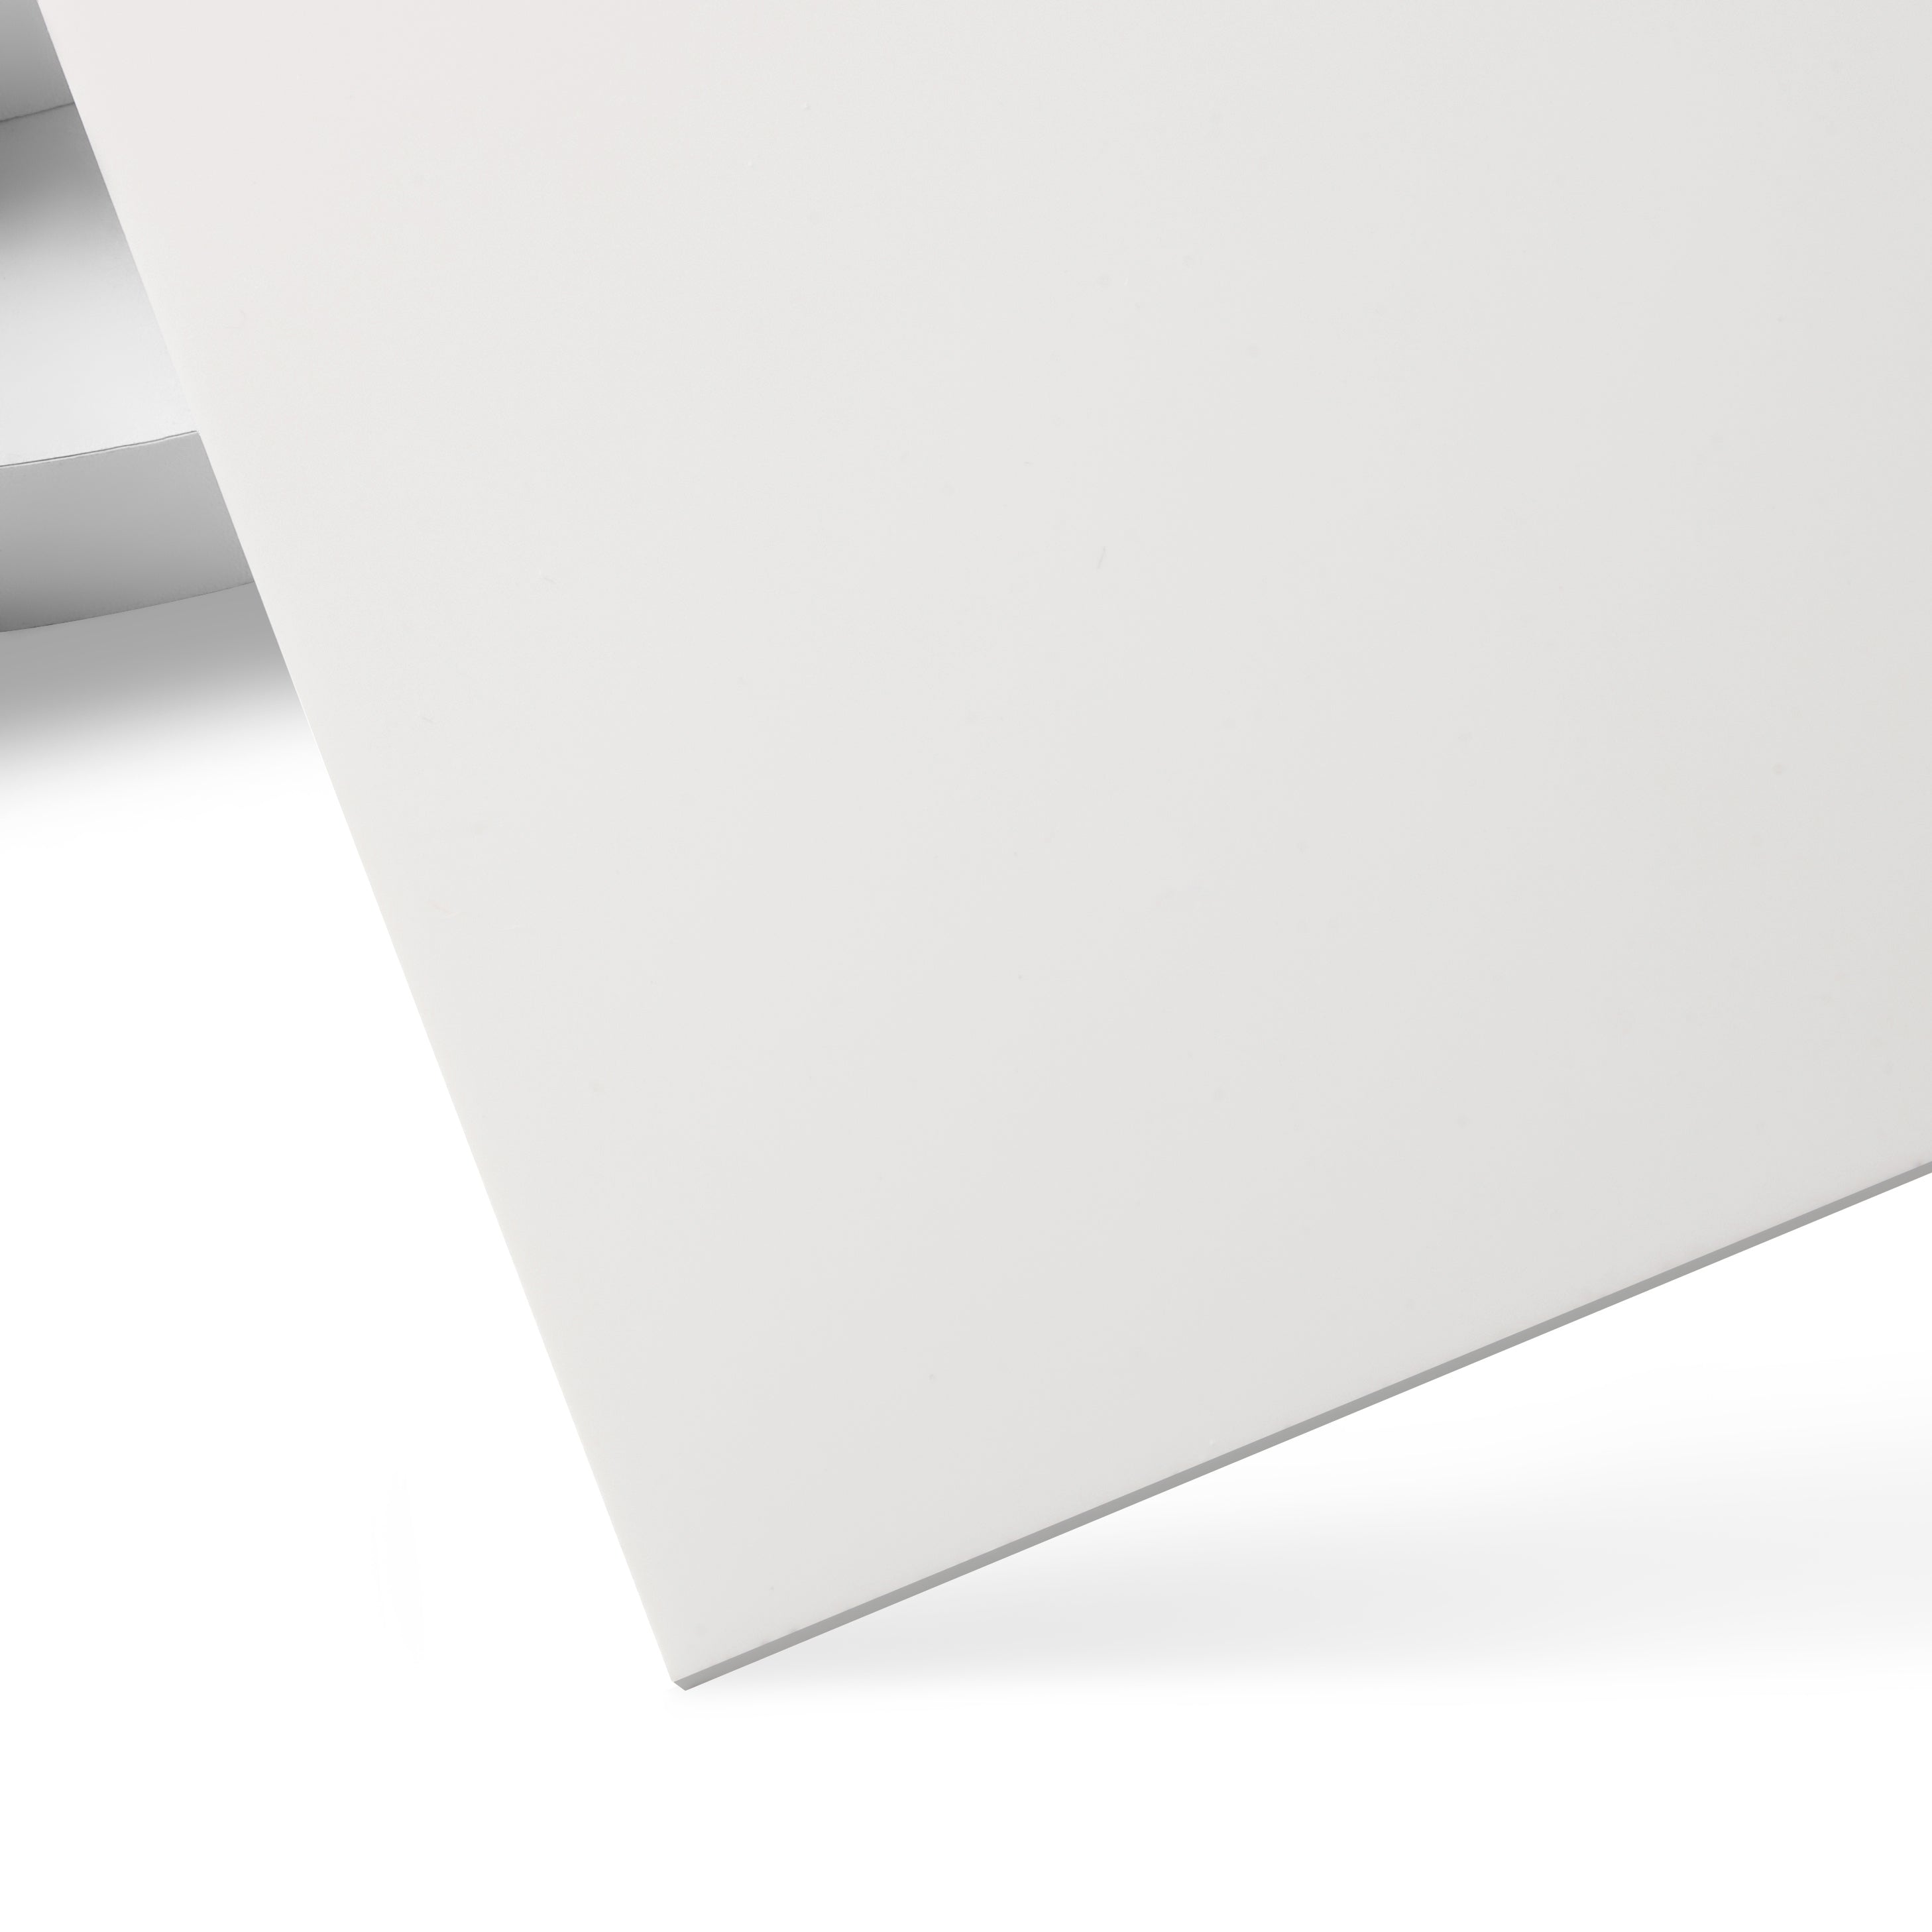 Plexiglas XT incolore lisse 5 mm (2050 x 1520 mm, épaisseur: 5 mm